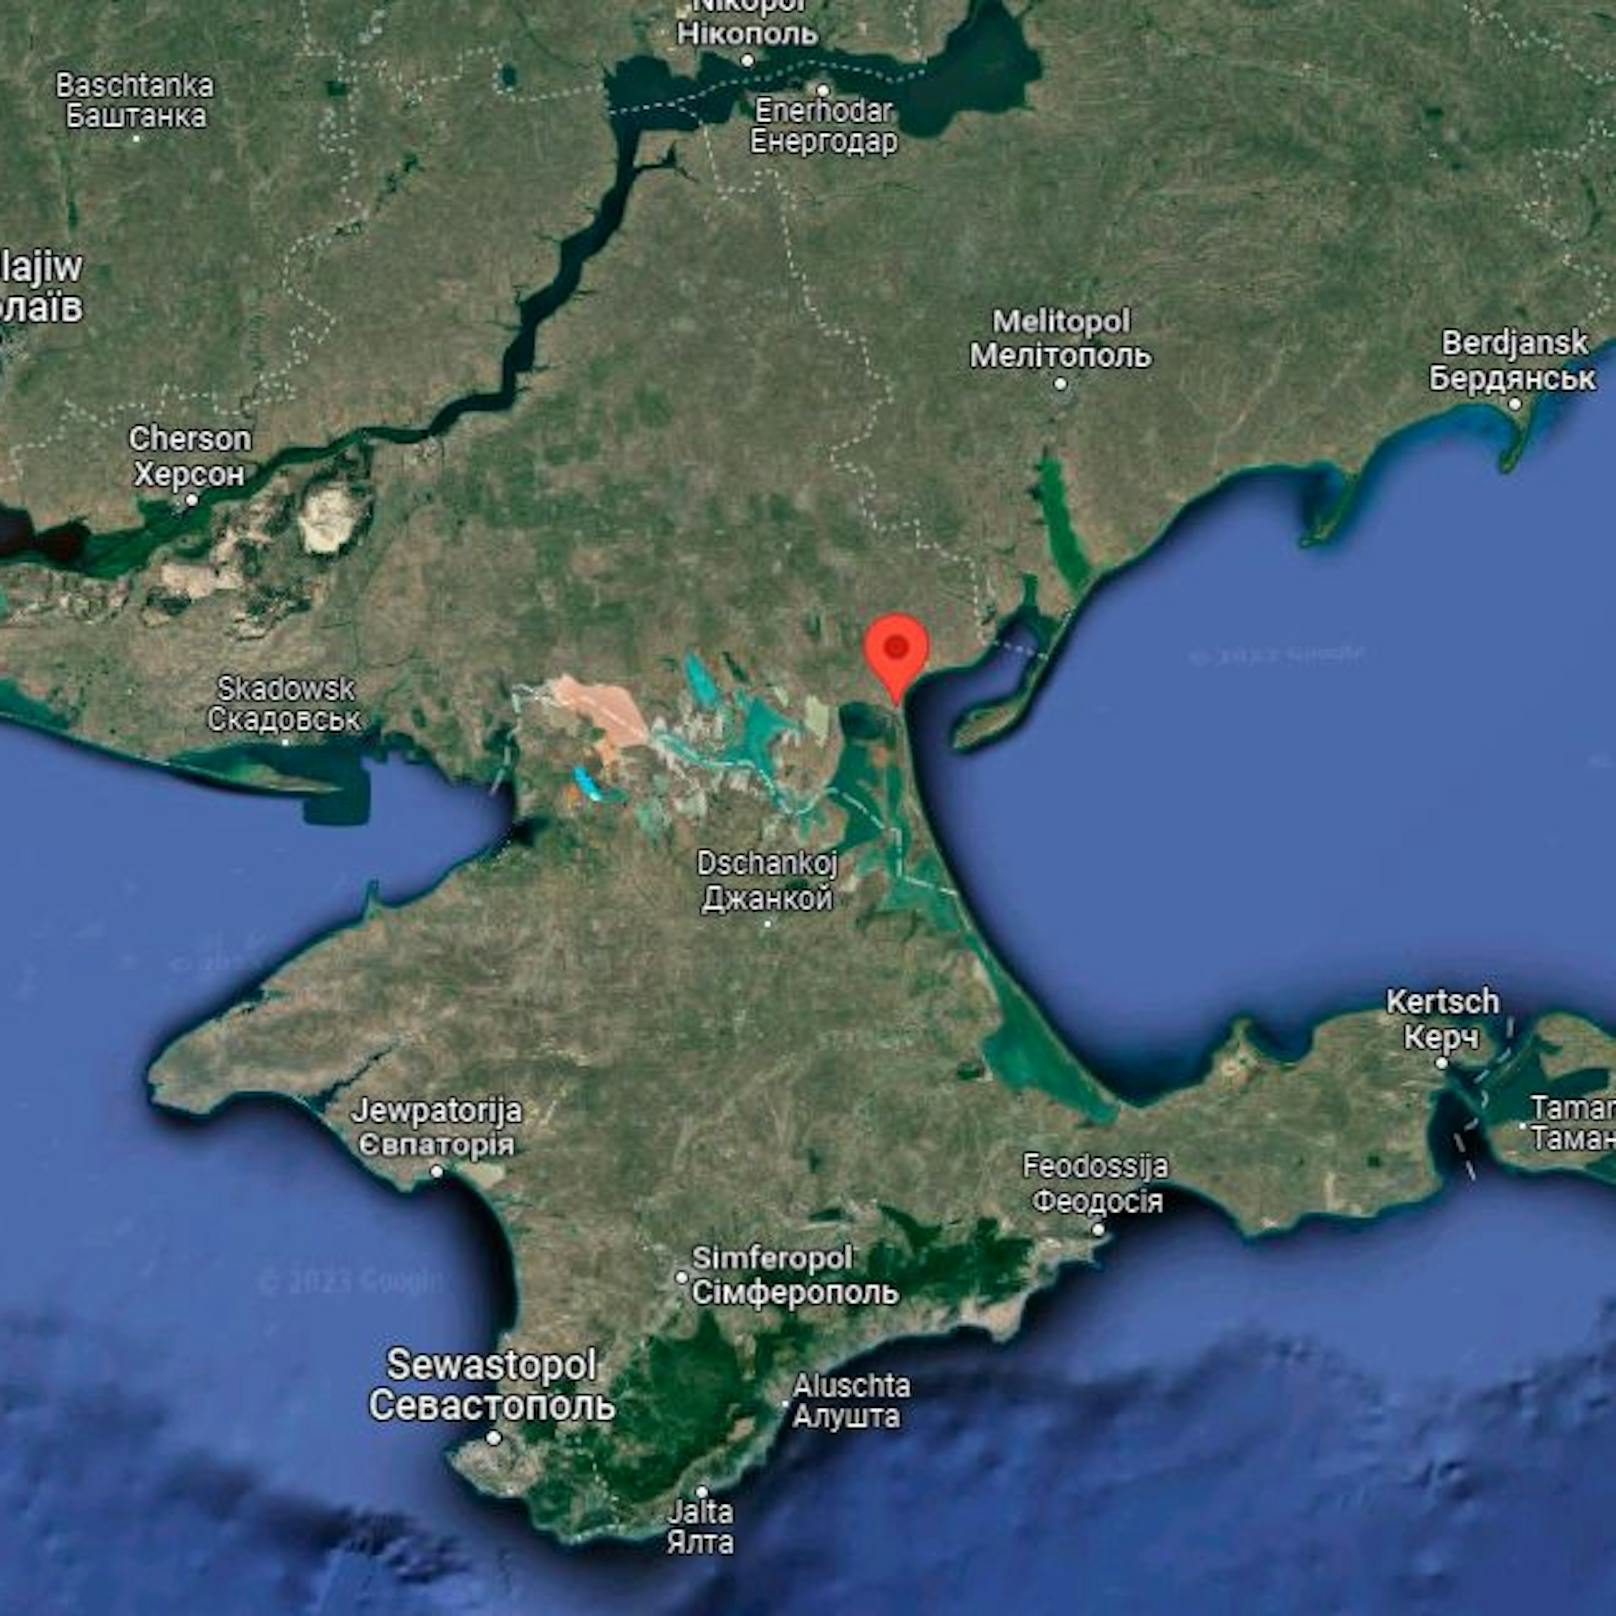 Henitschesk (rote Markierung) liegt direkt am Asow'schen Meer am Übergang zur bereits 2014 besetzten Halbinsel Krim.